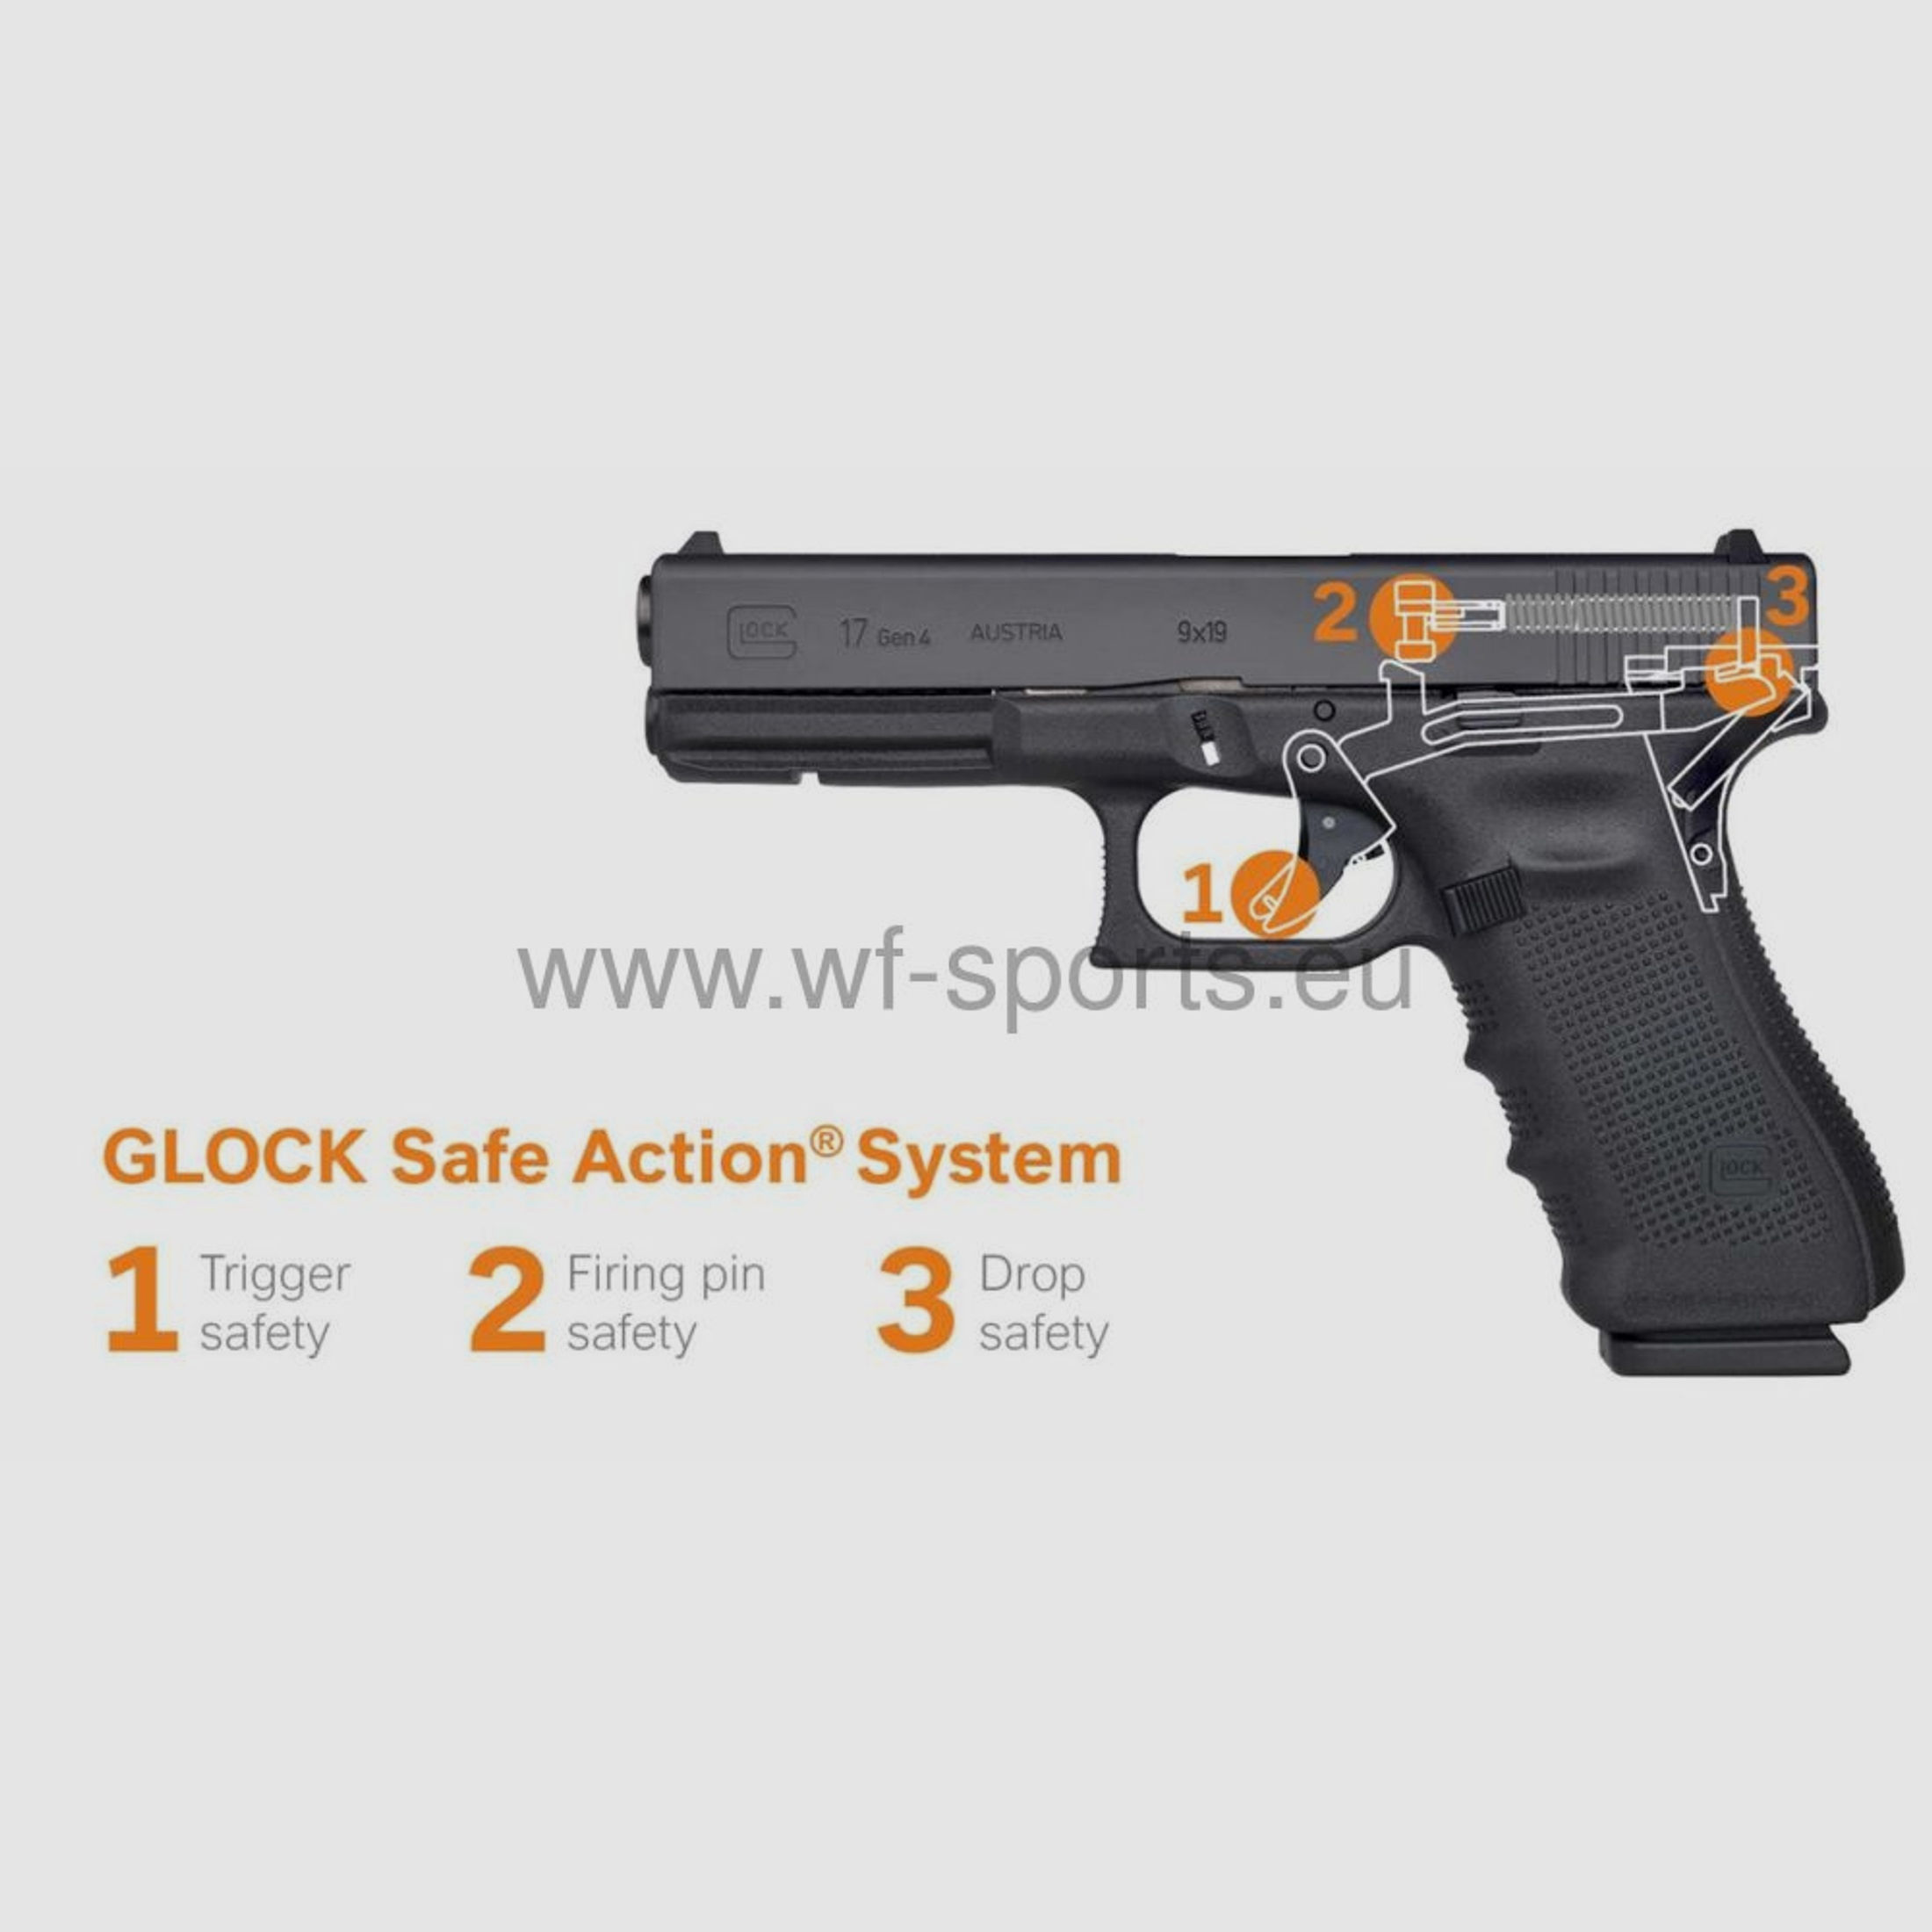 Glock 17 Gen5  WF-sports.eu	 Glock 17 Gen5